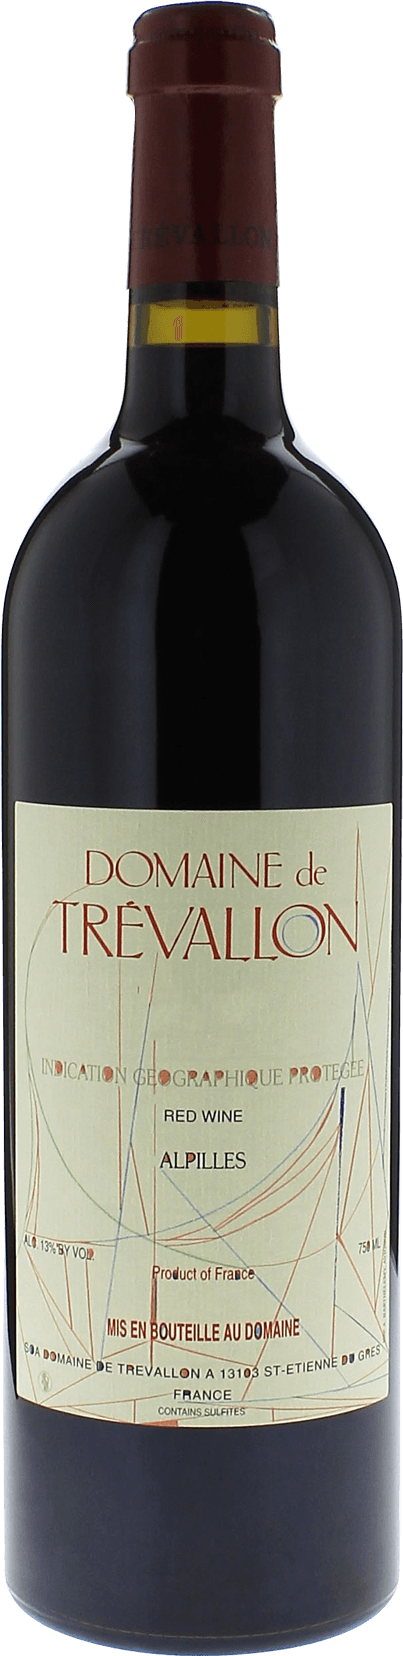 Domaine de trevallon rouge 2012  Vin de Pays, Provence